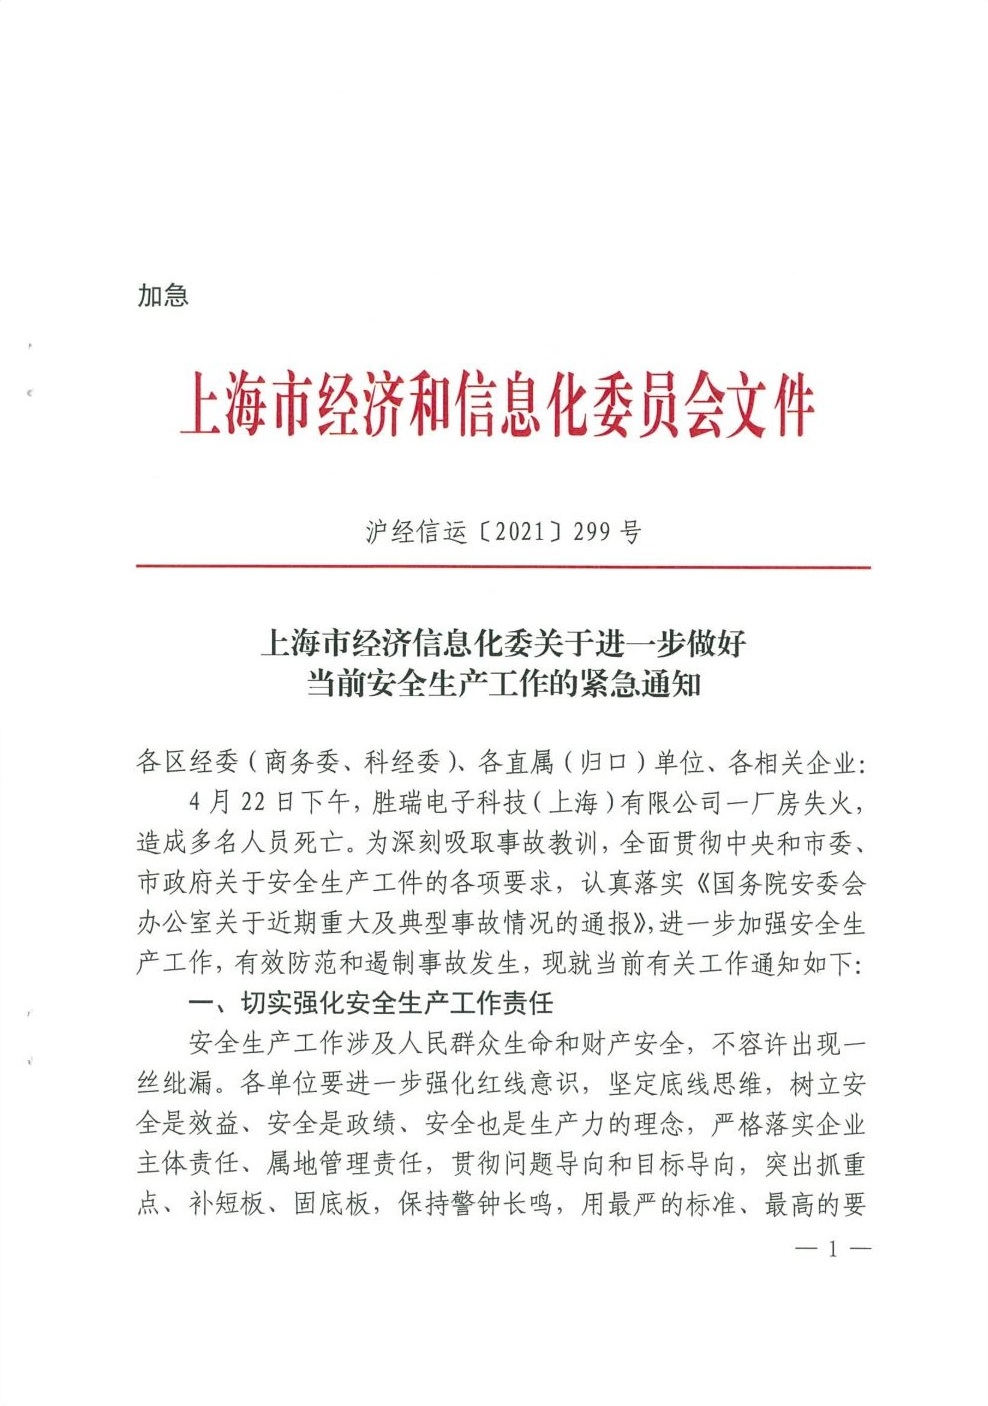 上海市经济信息化委关于进一步做好当前安全生产工作的紧急通知